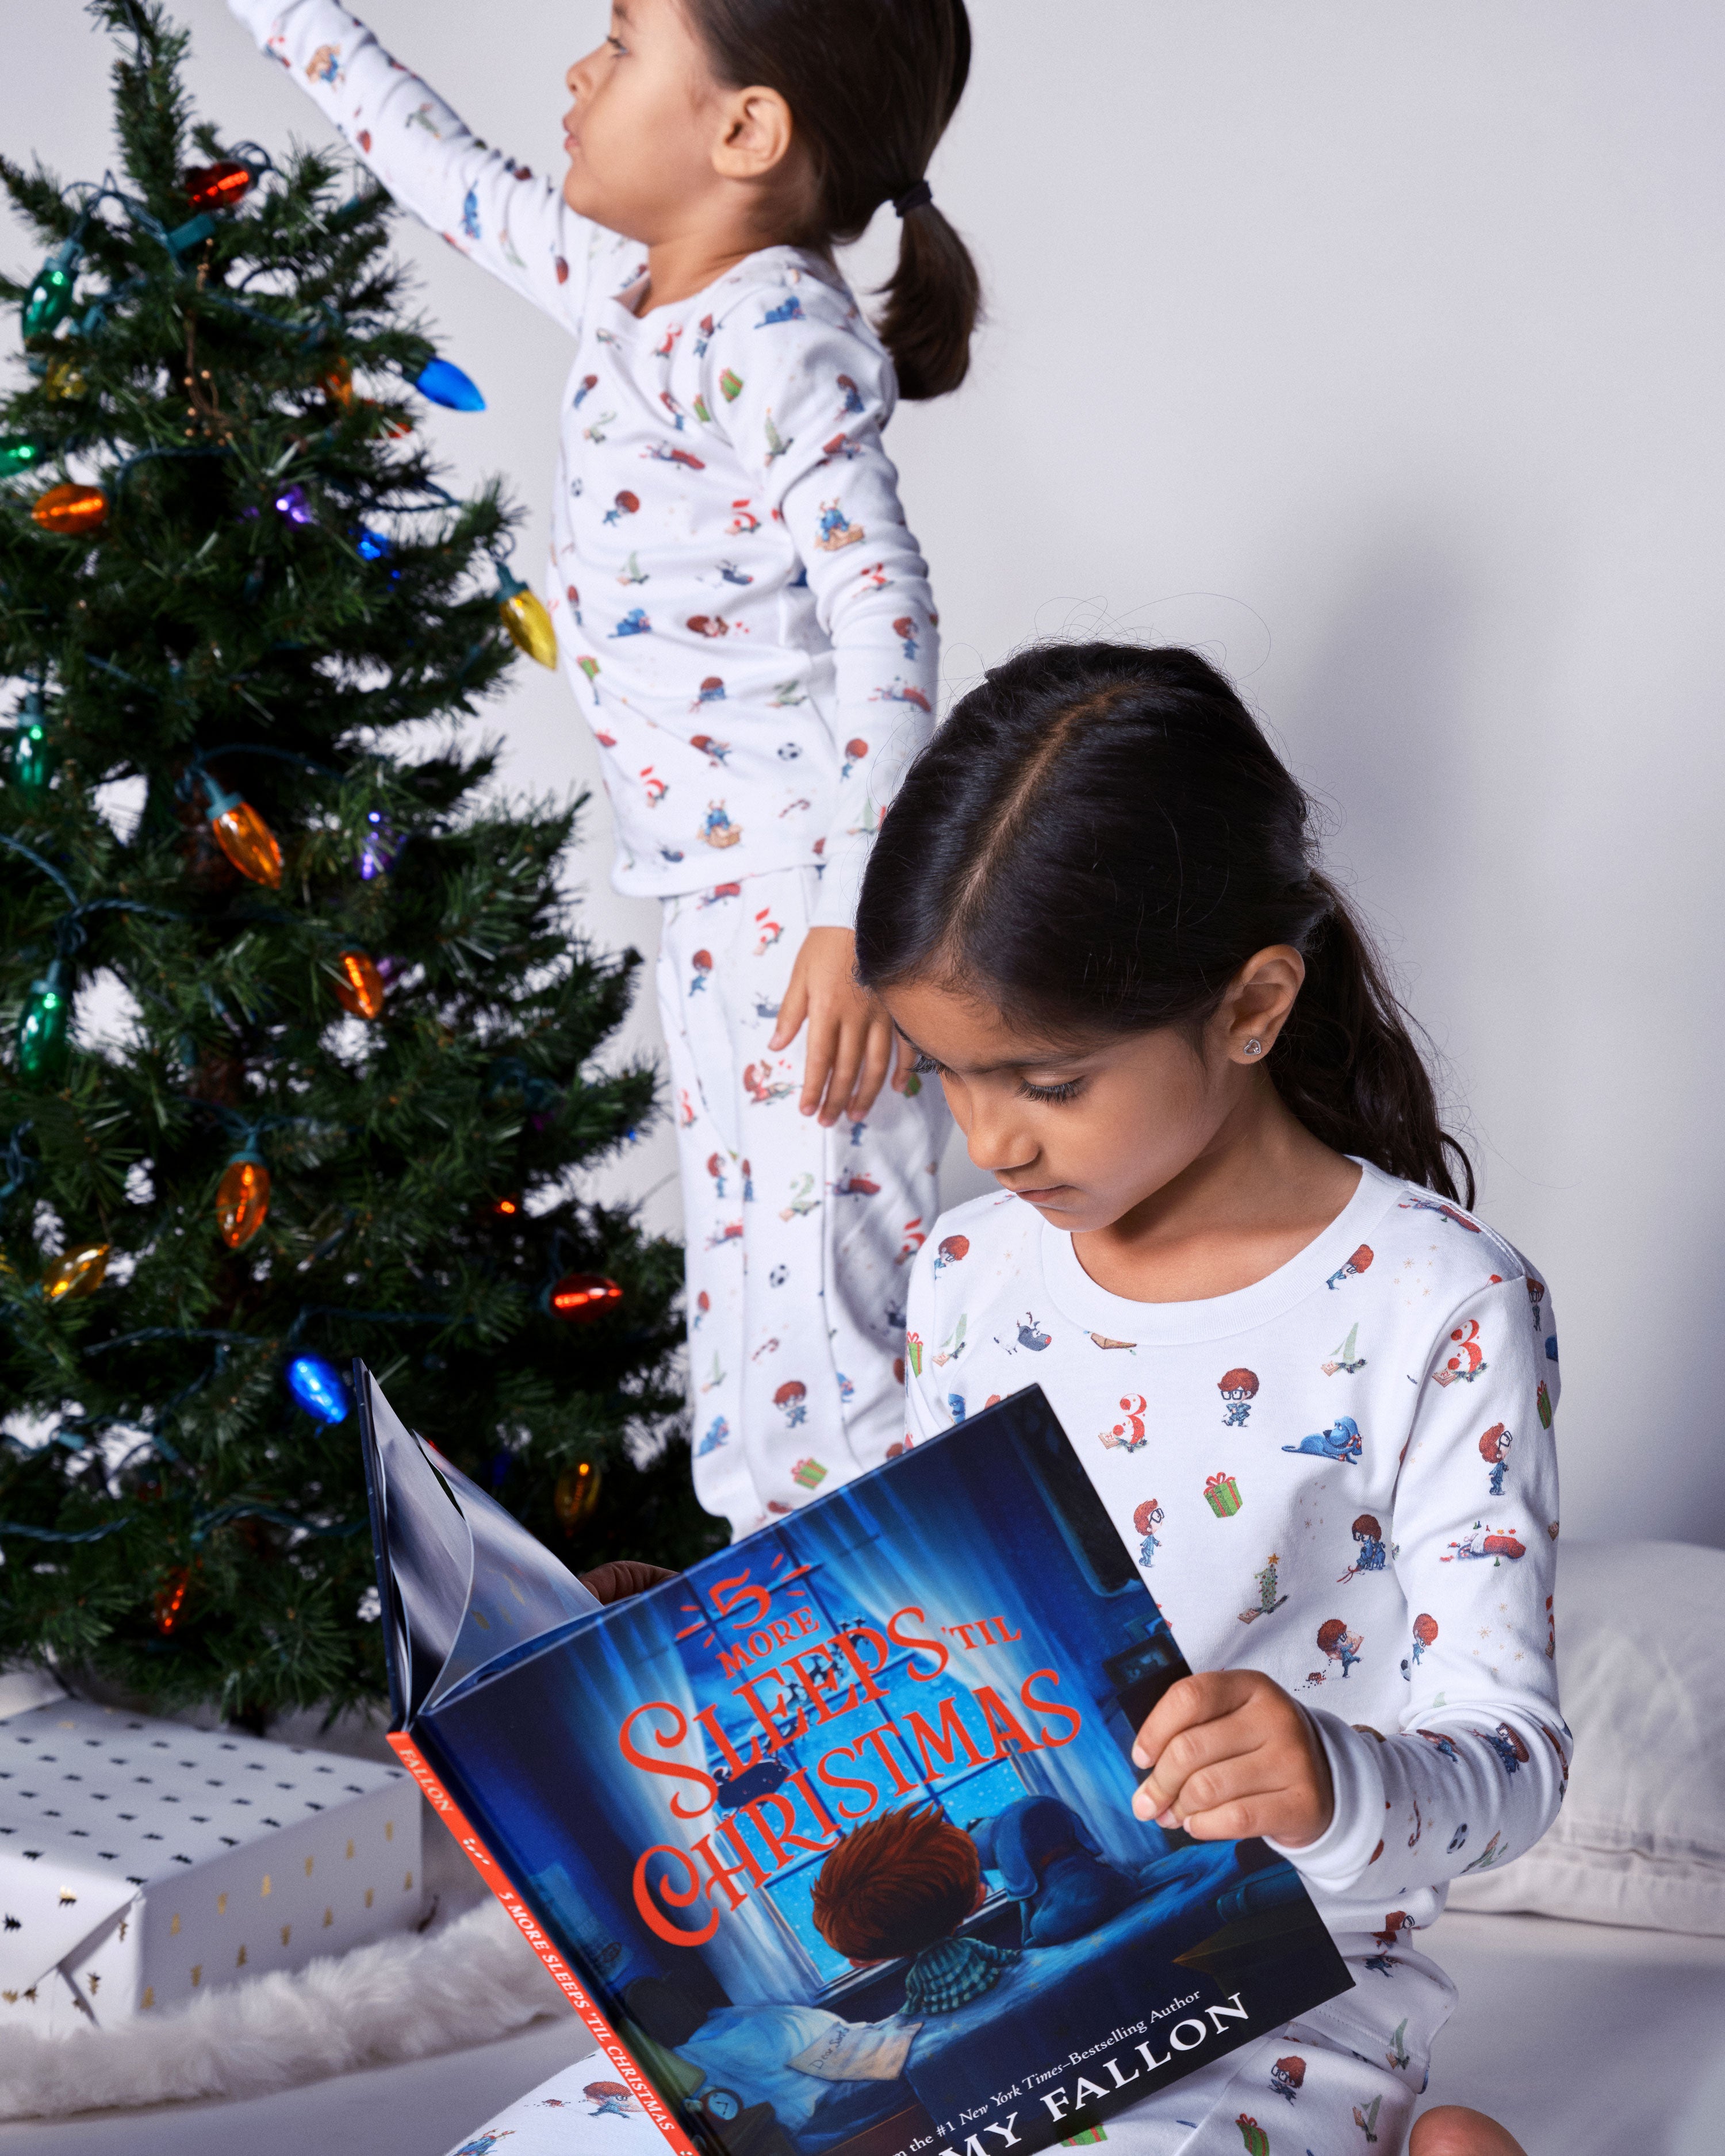 The Organic Long Sleeve Pajama and Book Gift Set 5 More Sleeps til Christmas Hover #color_5 More Sleeps til Christmas